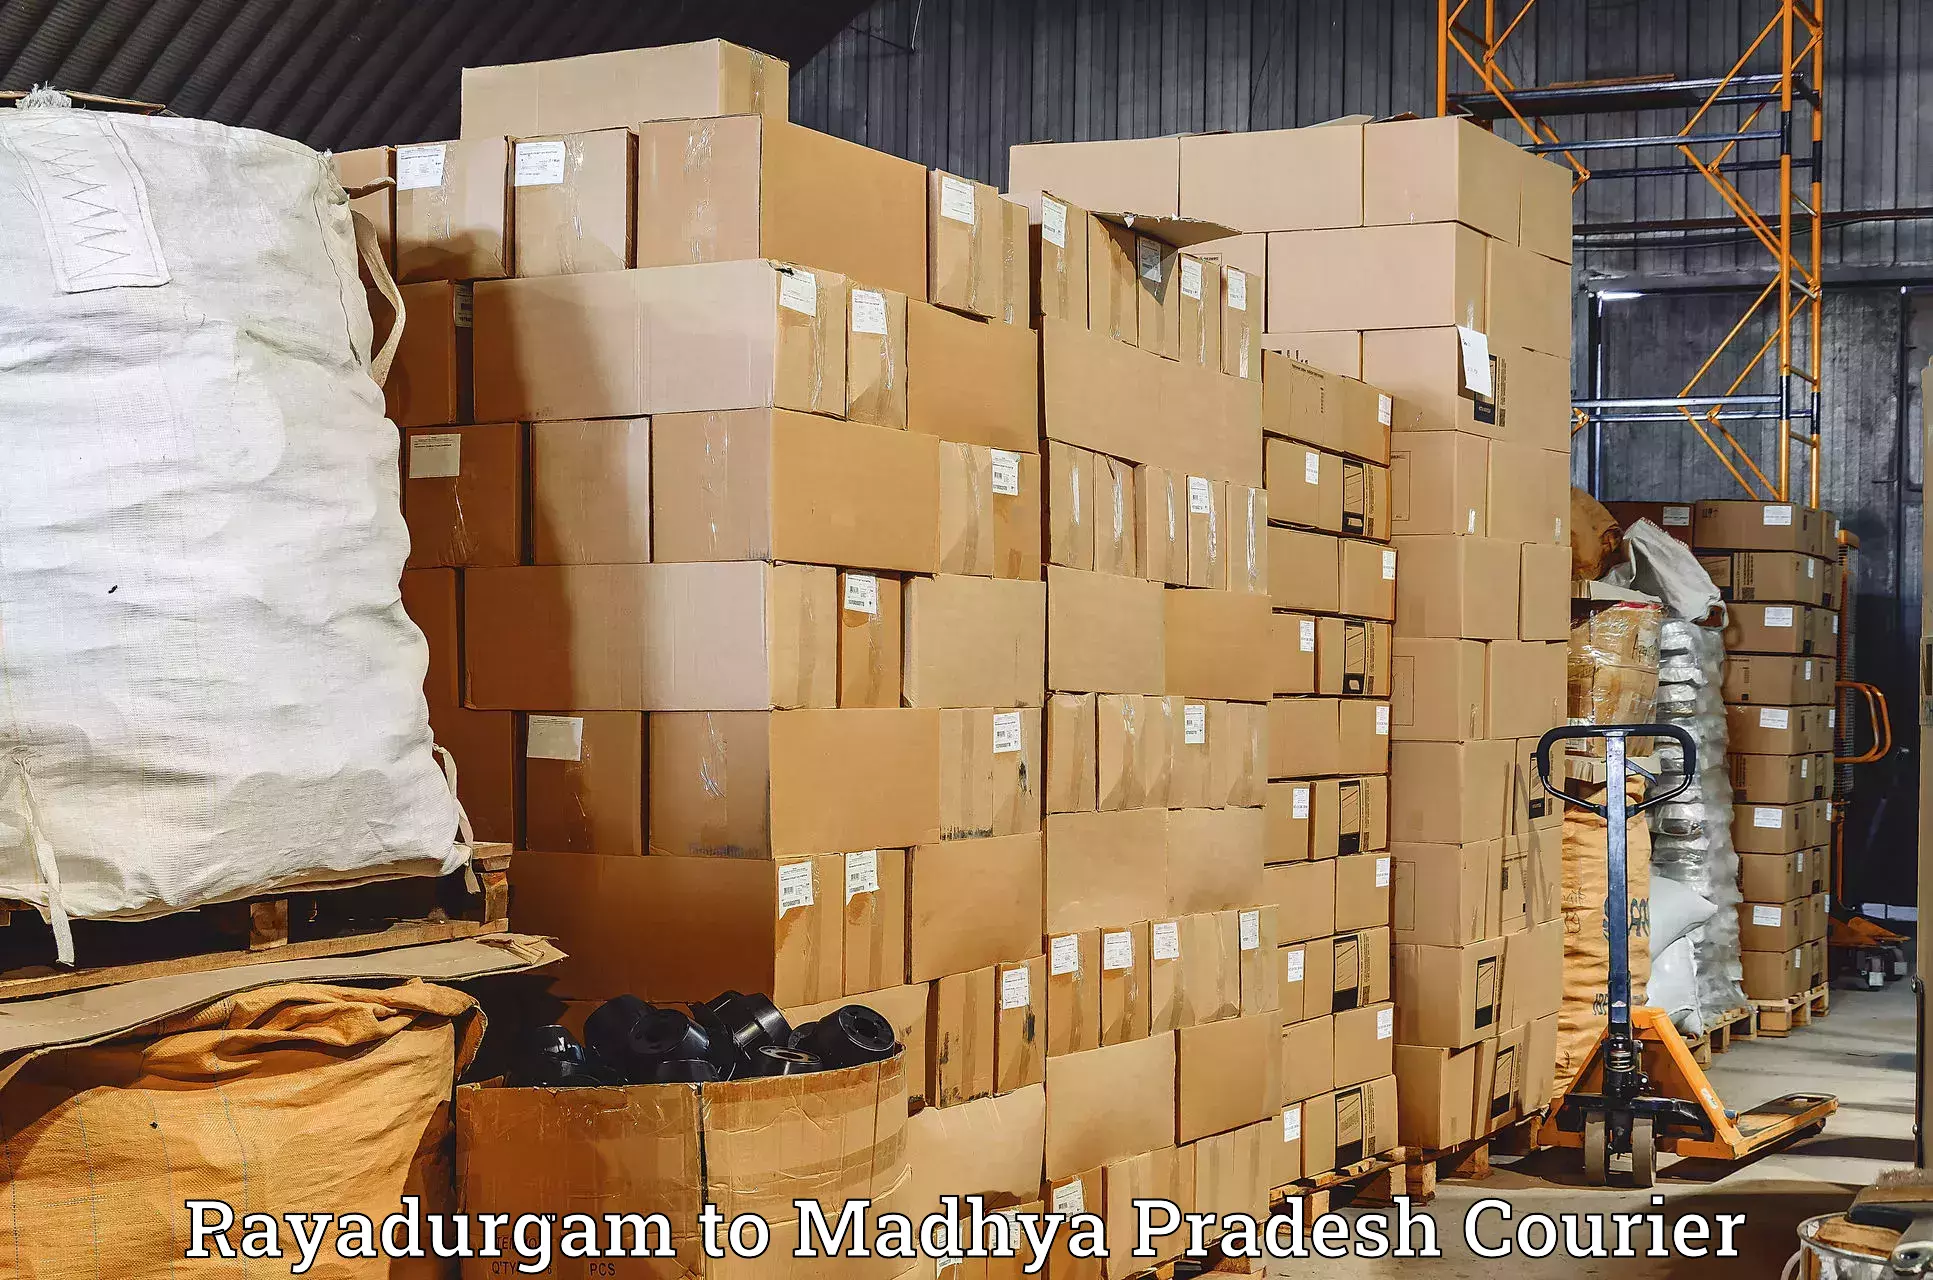 Small business couriers Rayadurgam to Madhya Pradesh